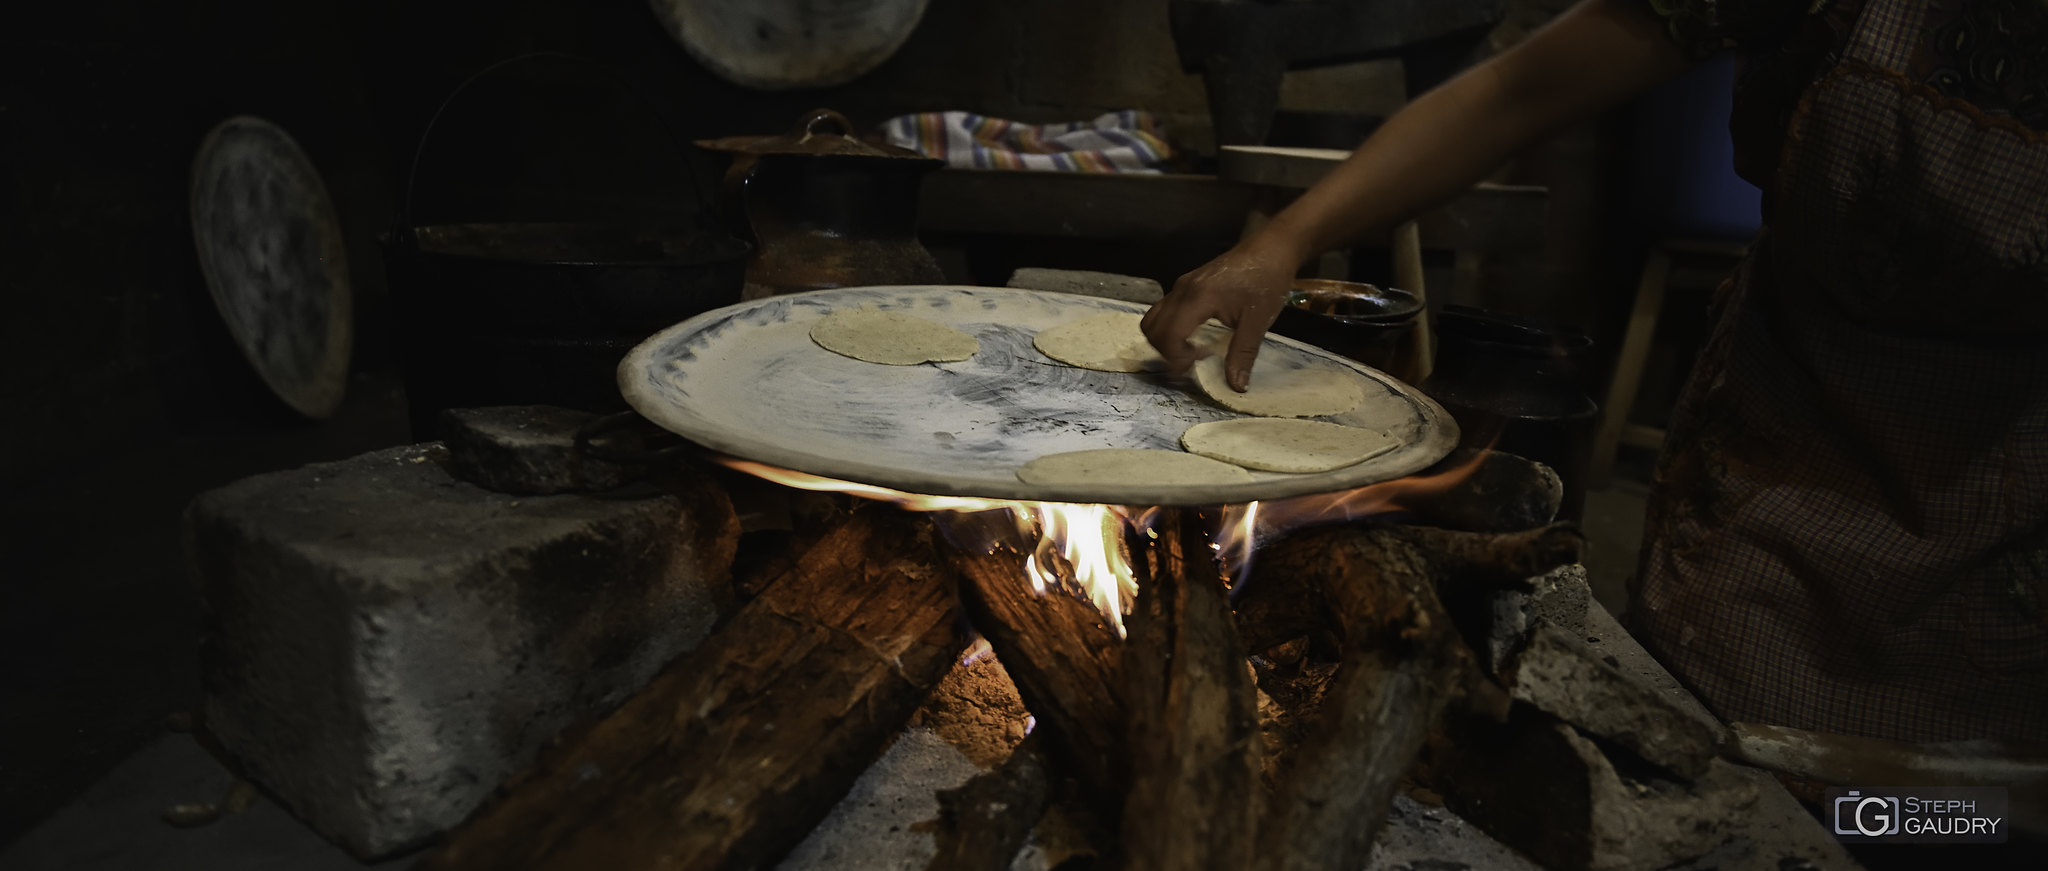 Tacos mexicanos - cocinar a fuego de leña [Click to start slideshow]